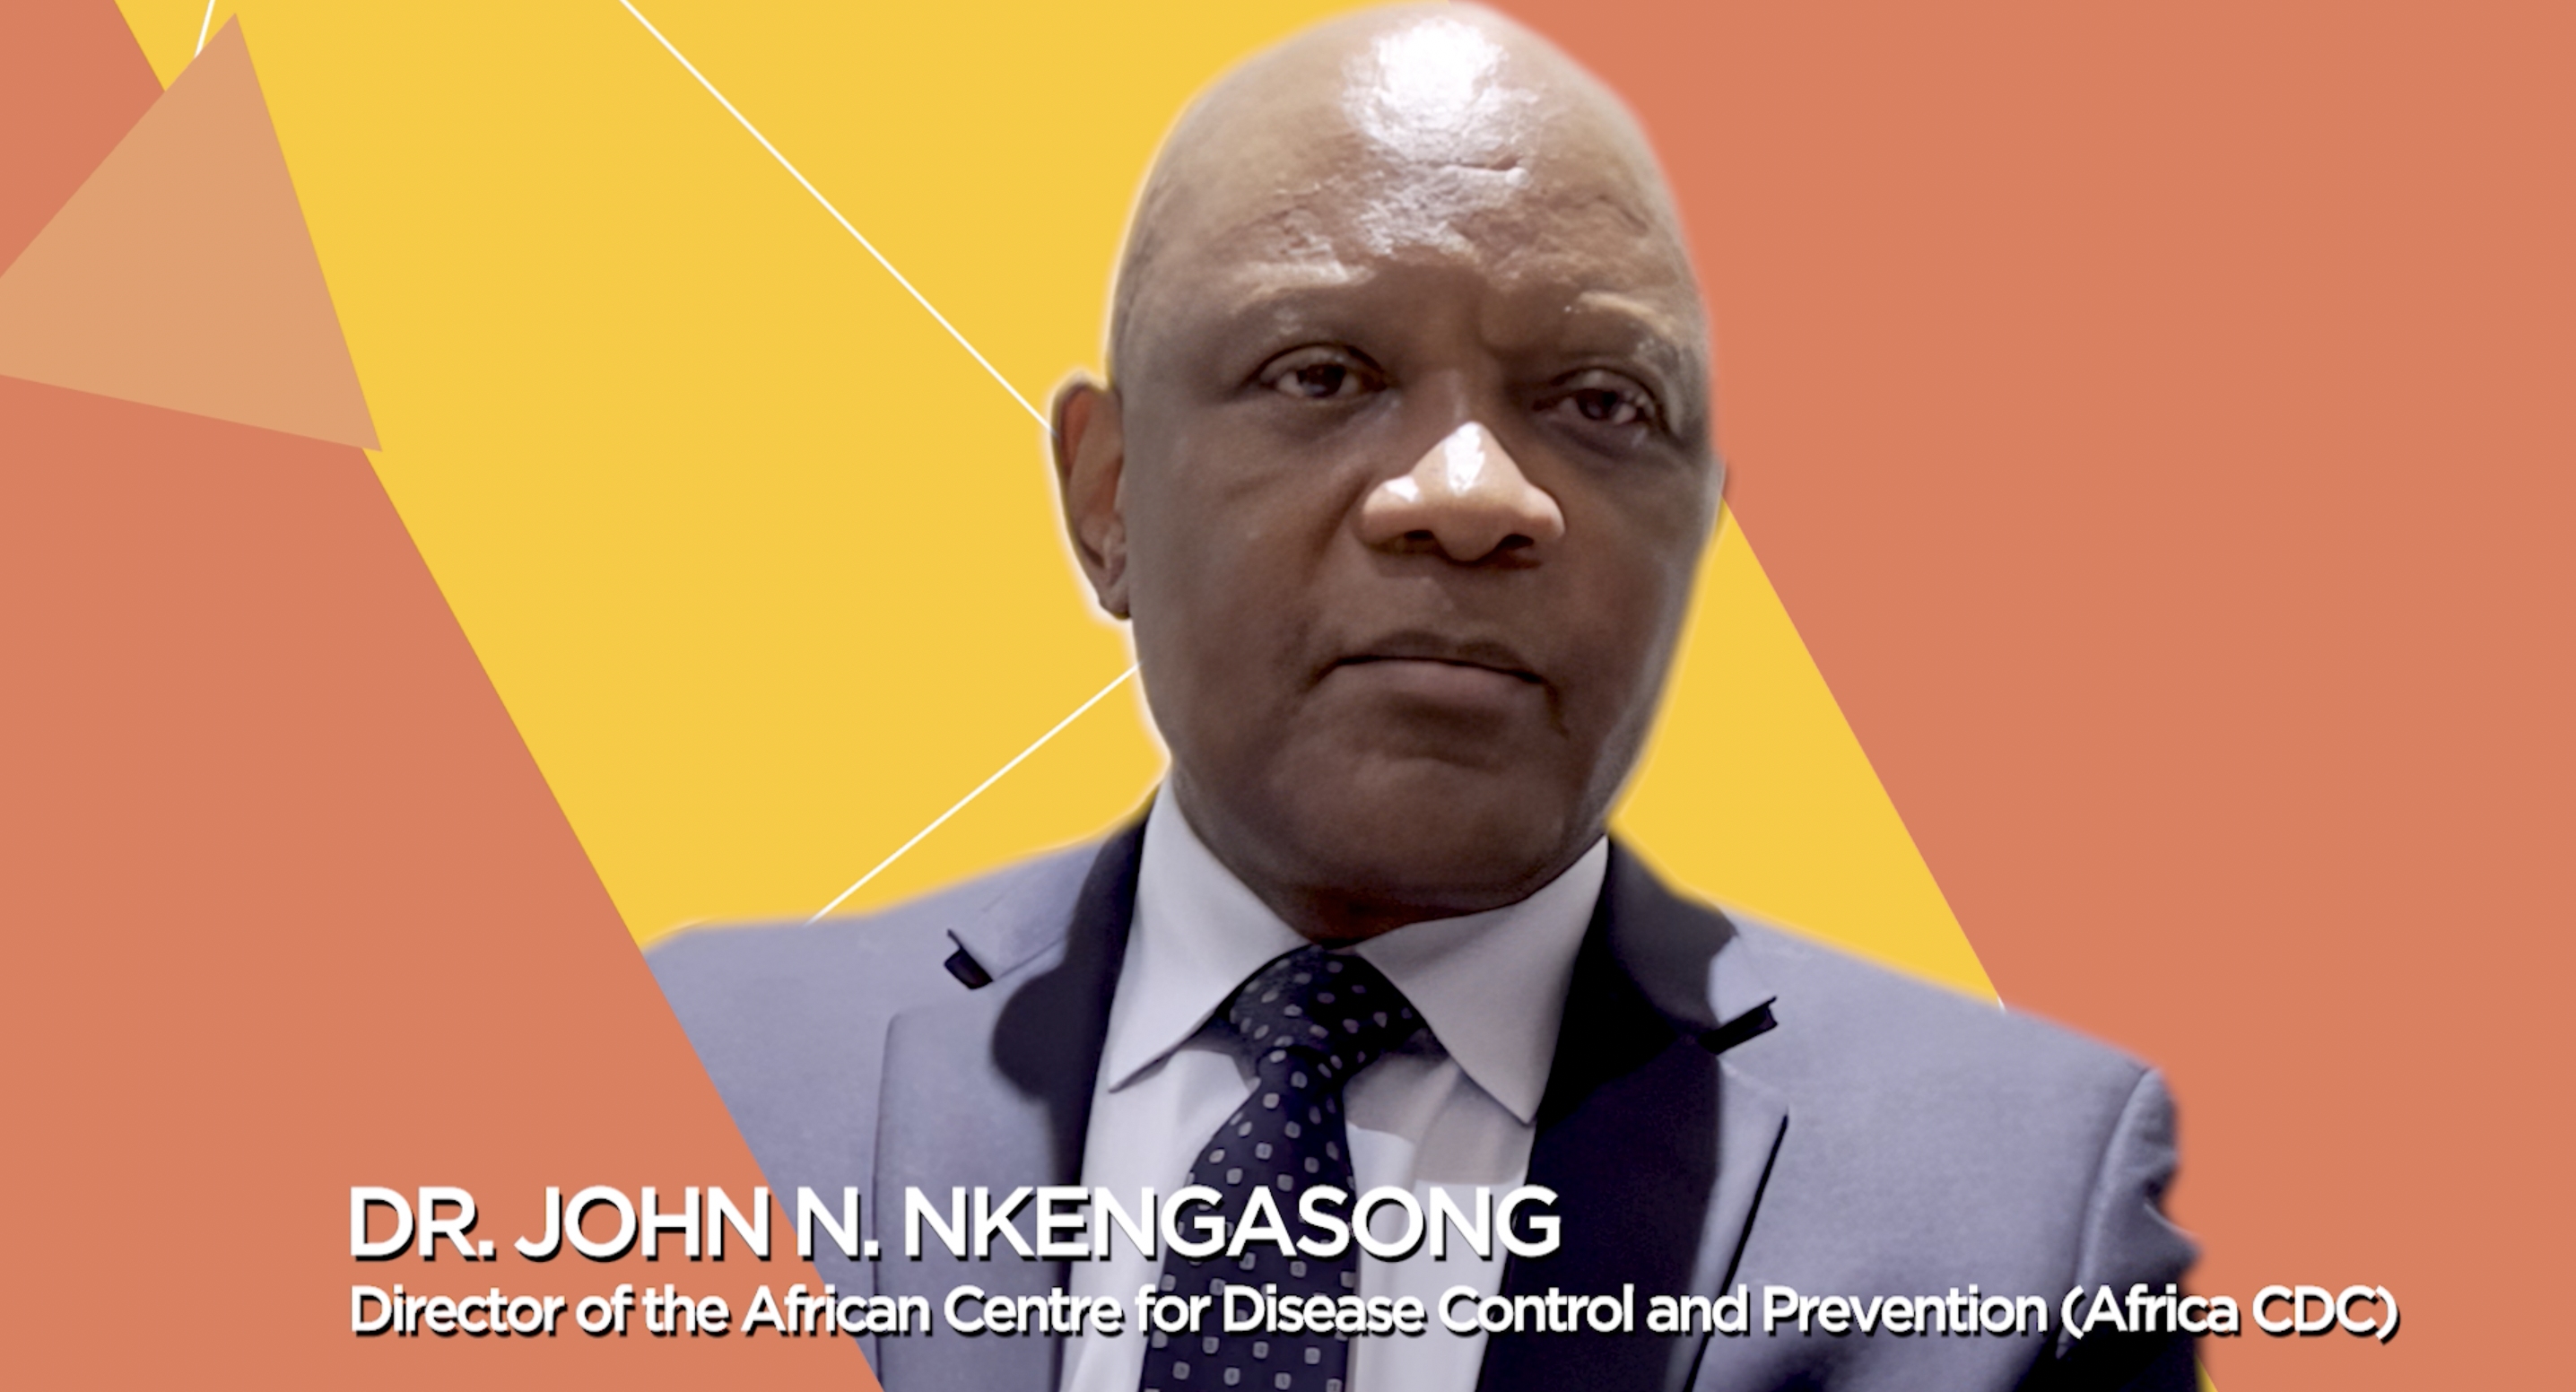 Dr John N. Nkengasong 2021 Health Cycle co-laureate